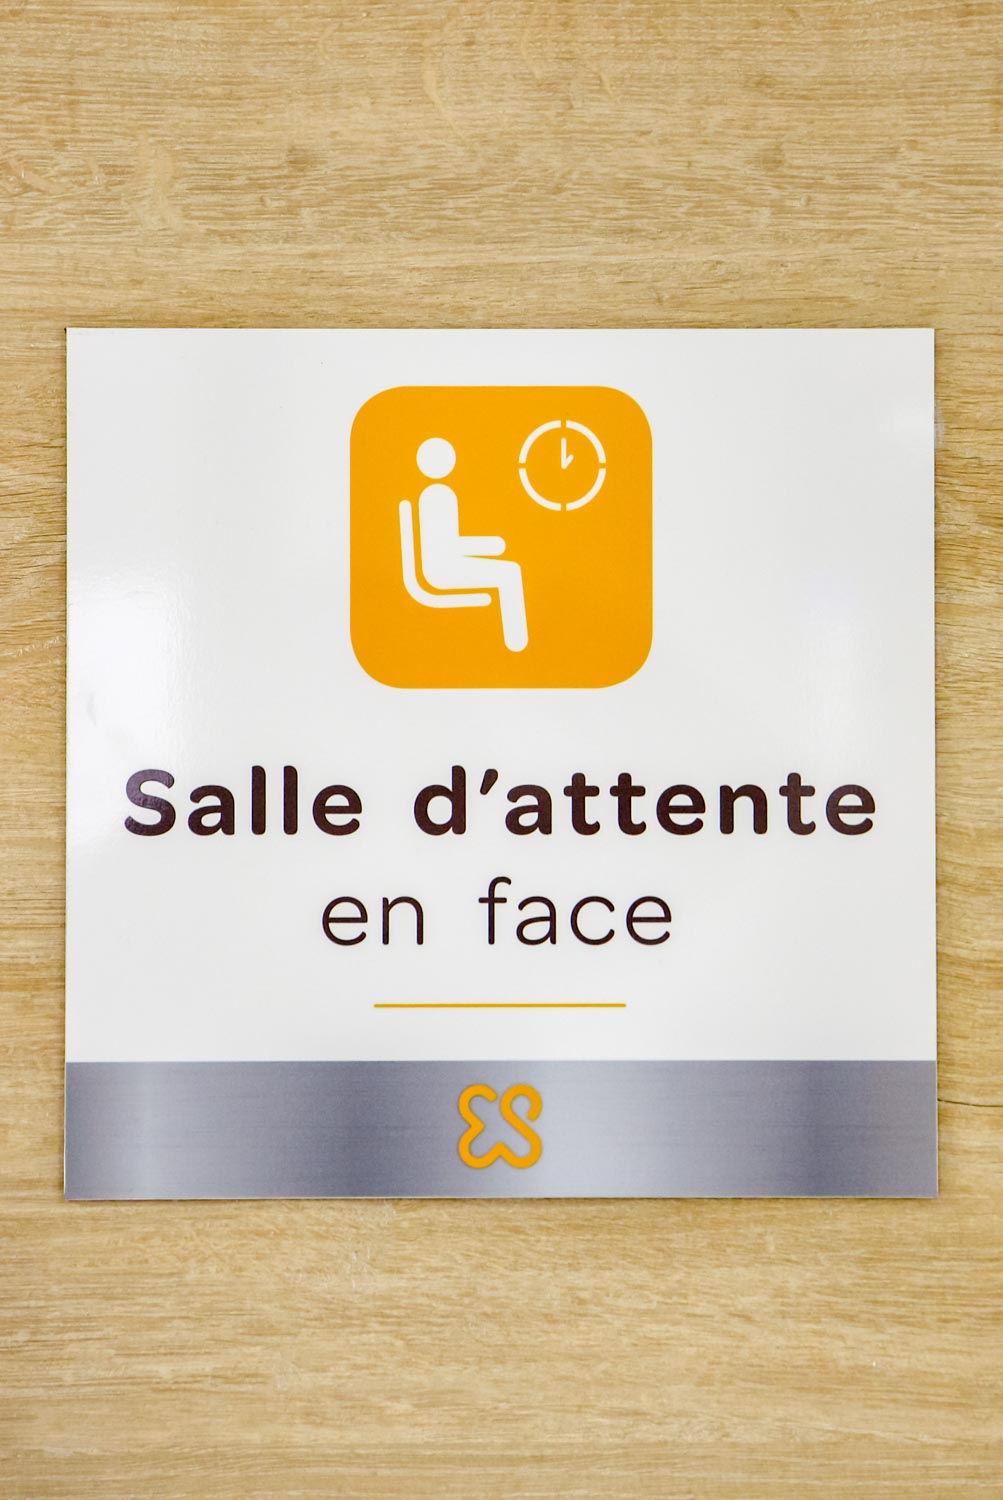 Panneau-salle-attente-Signalétique-milieu-dédical-Toulon-Elsan-St-Michel-Clinique-Hopital-Var